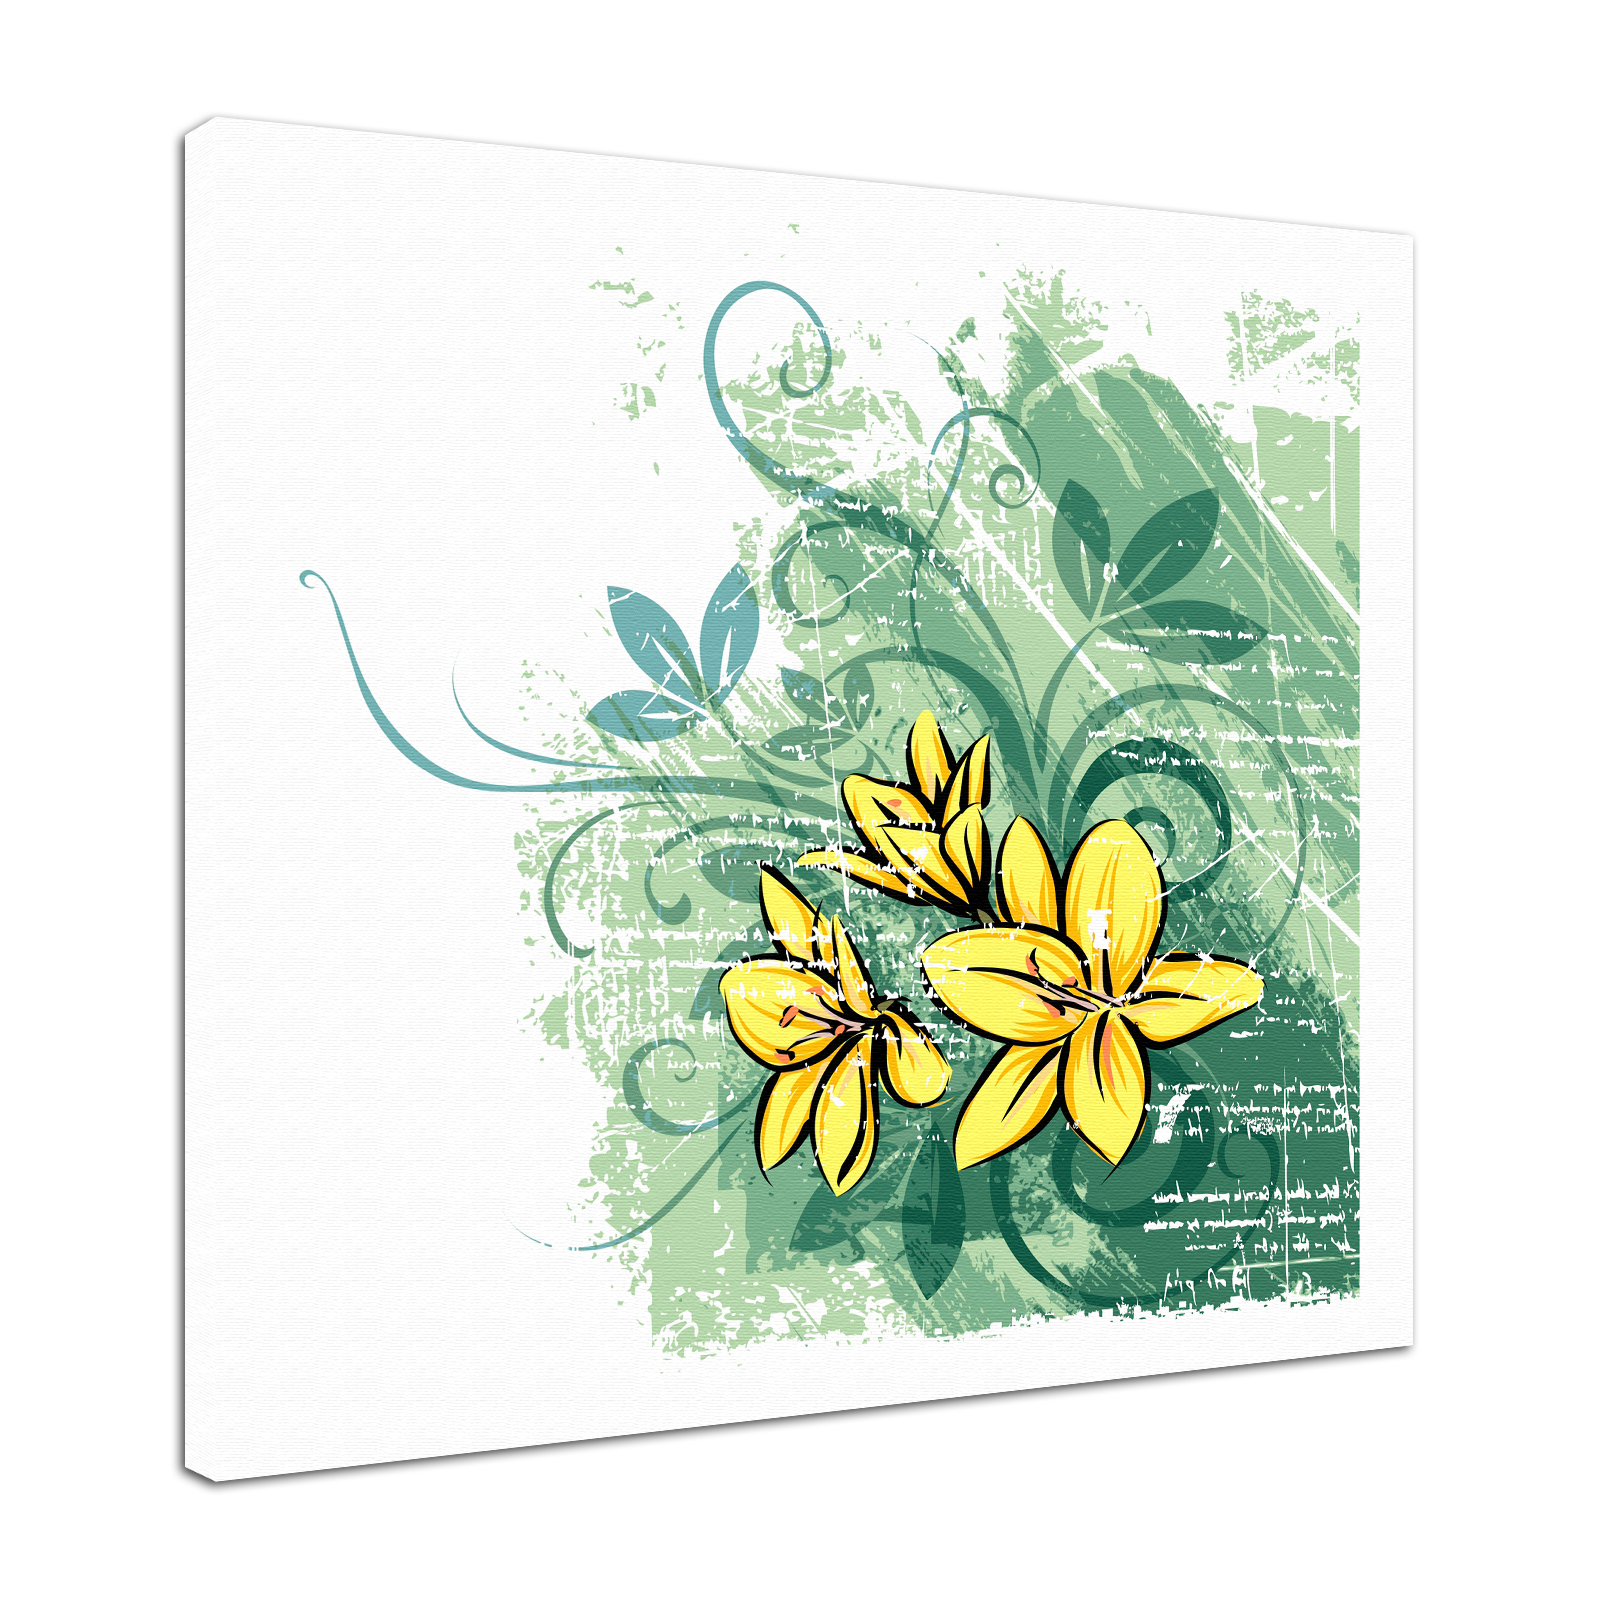 Leinwandbild Bild Wandbild Natur & Blumen Zeichnung modern in gelb und grün